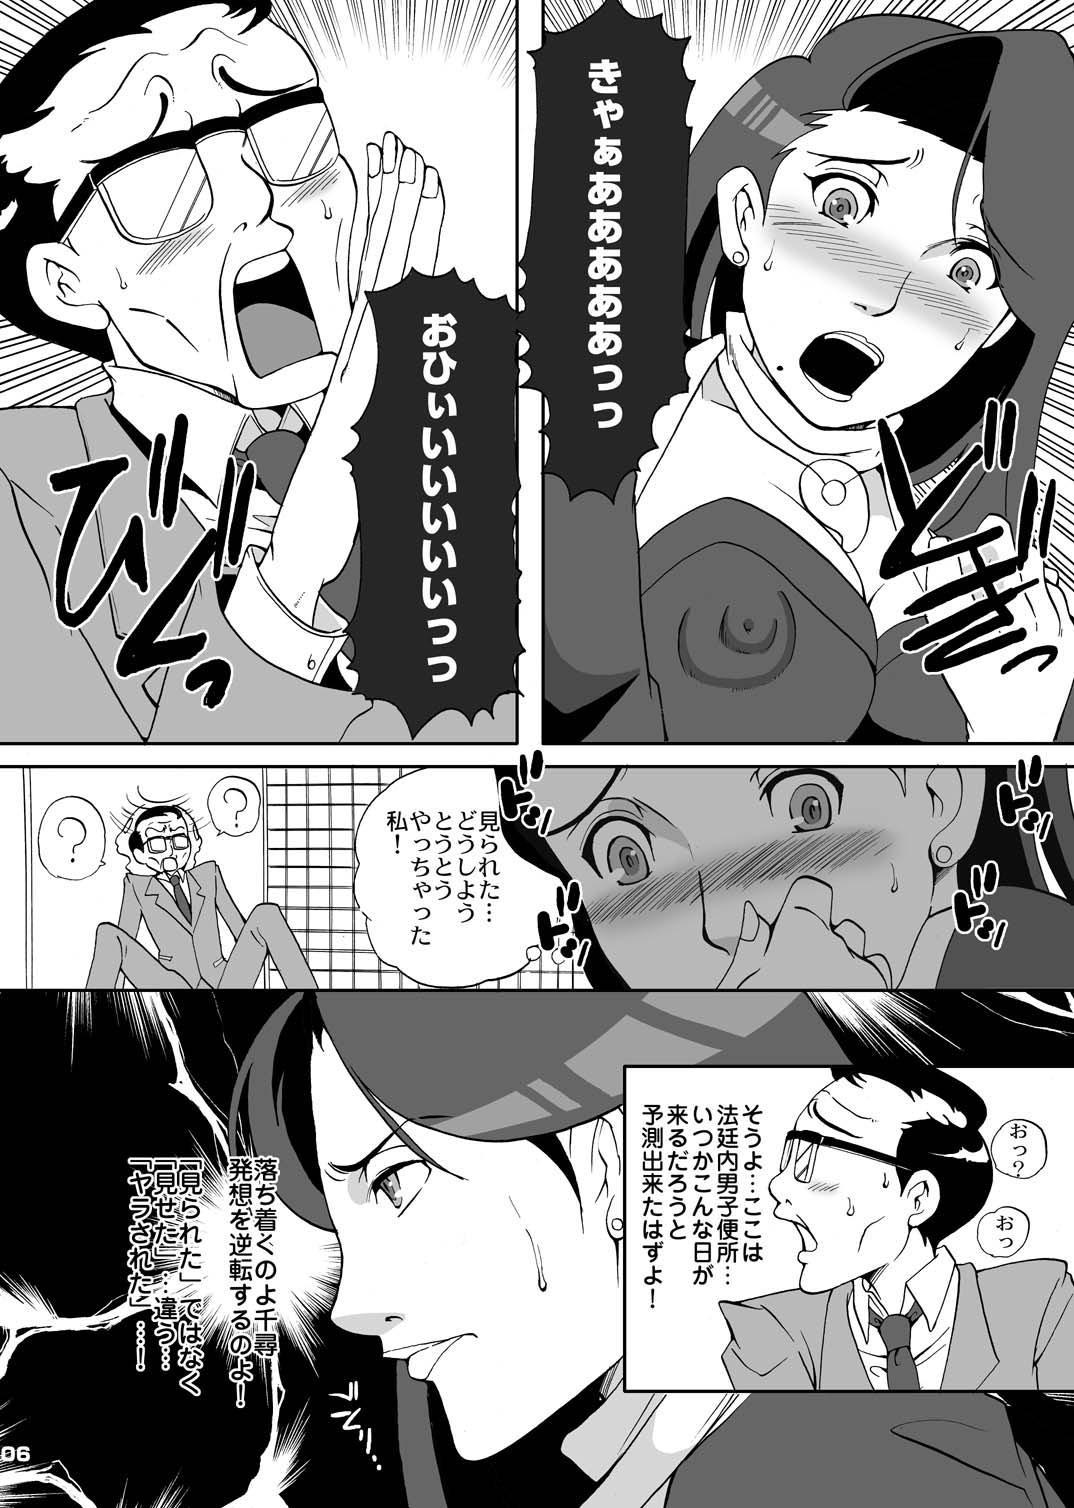 Family Gyakuten Ranbu - Ace attorney Gonzo - Page 6